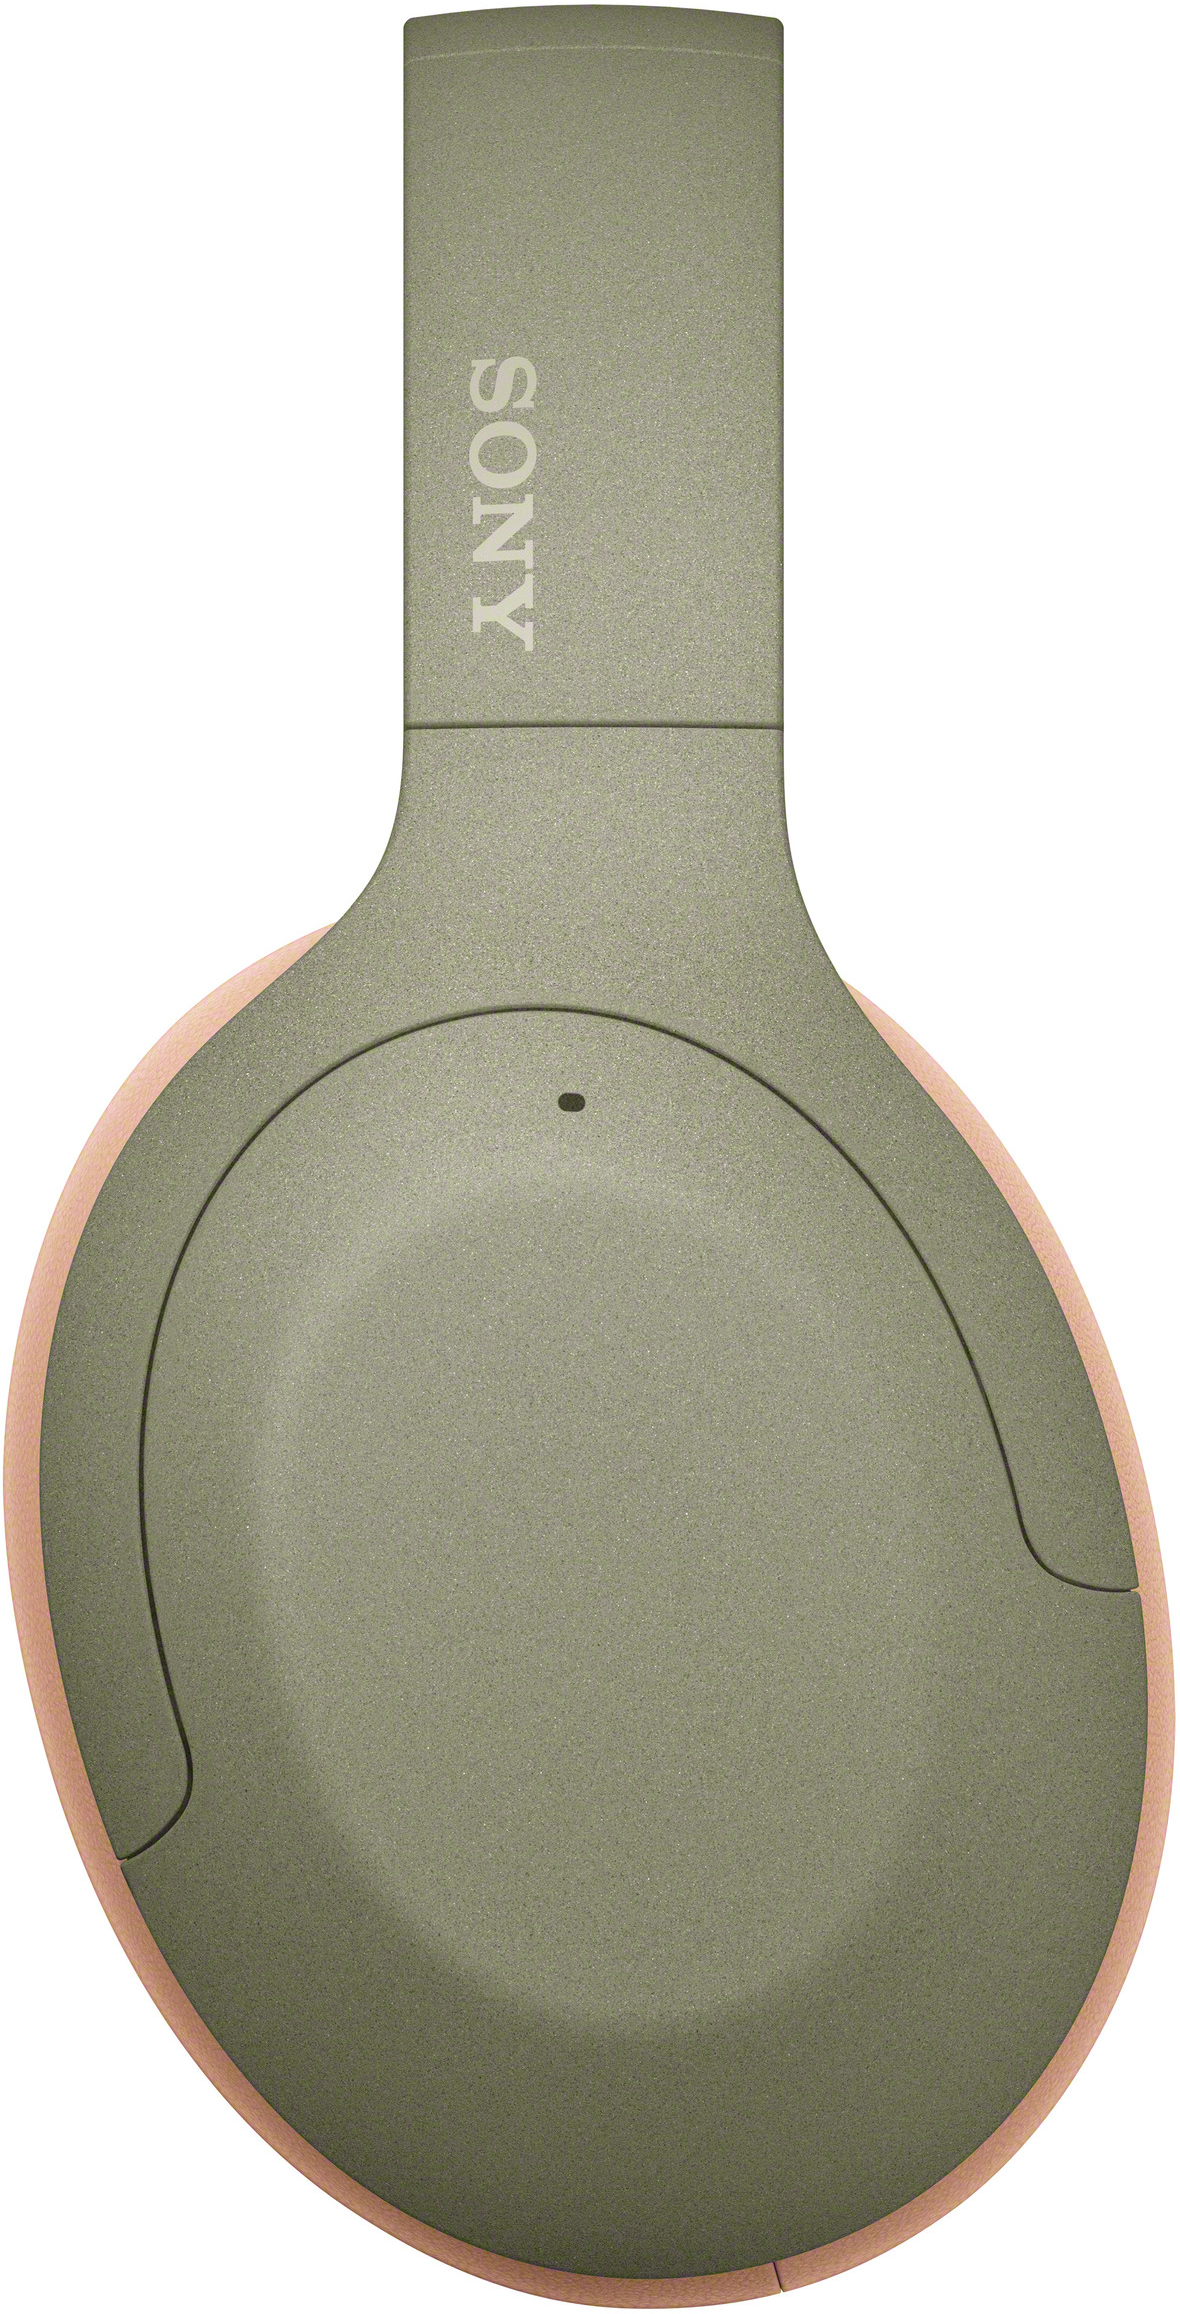 h.ear 3 Over-ear on Kopfhörer Grün Bluetooth SONY WH-H910N,